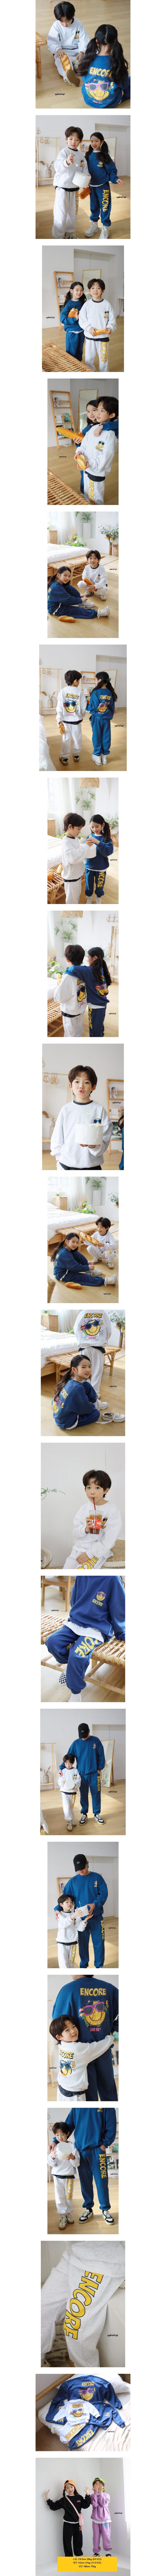 Ggomenge - Korean Children Fashion - #todddlerfashion - Crush Top Bottom Set - 2